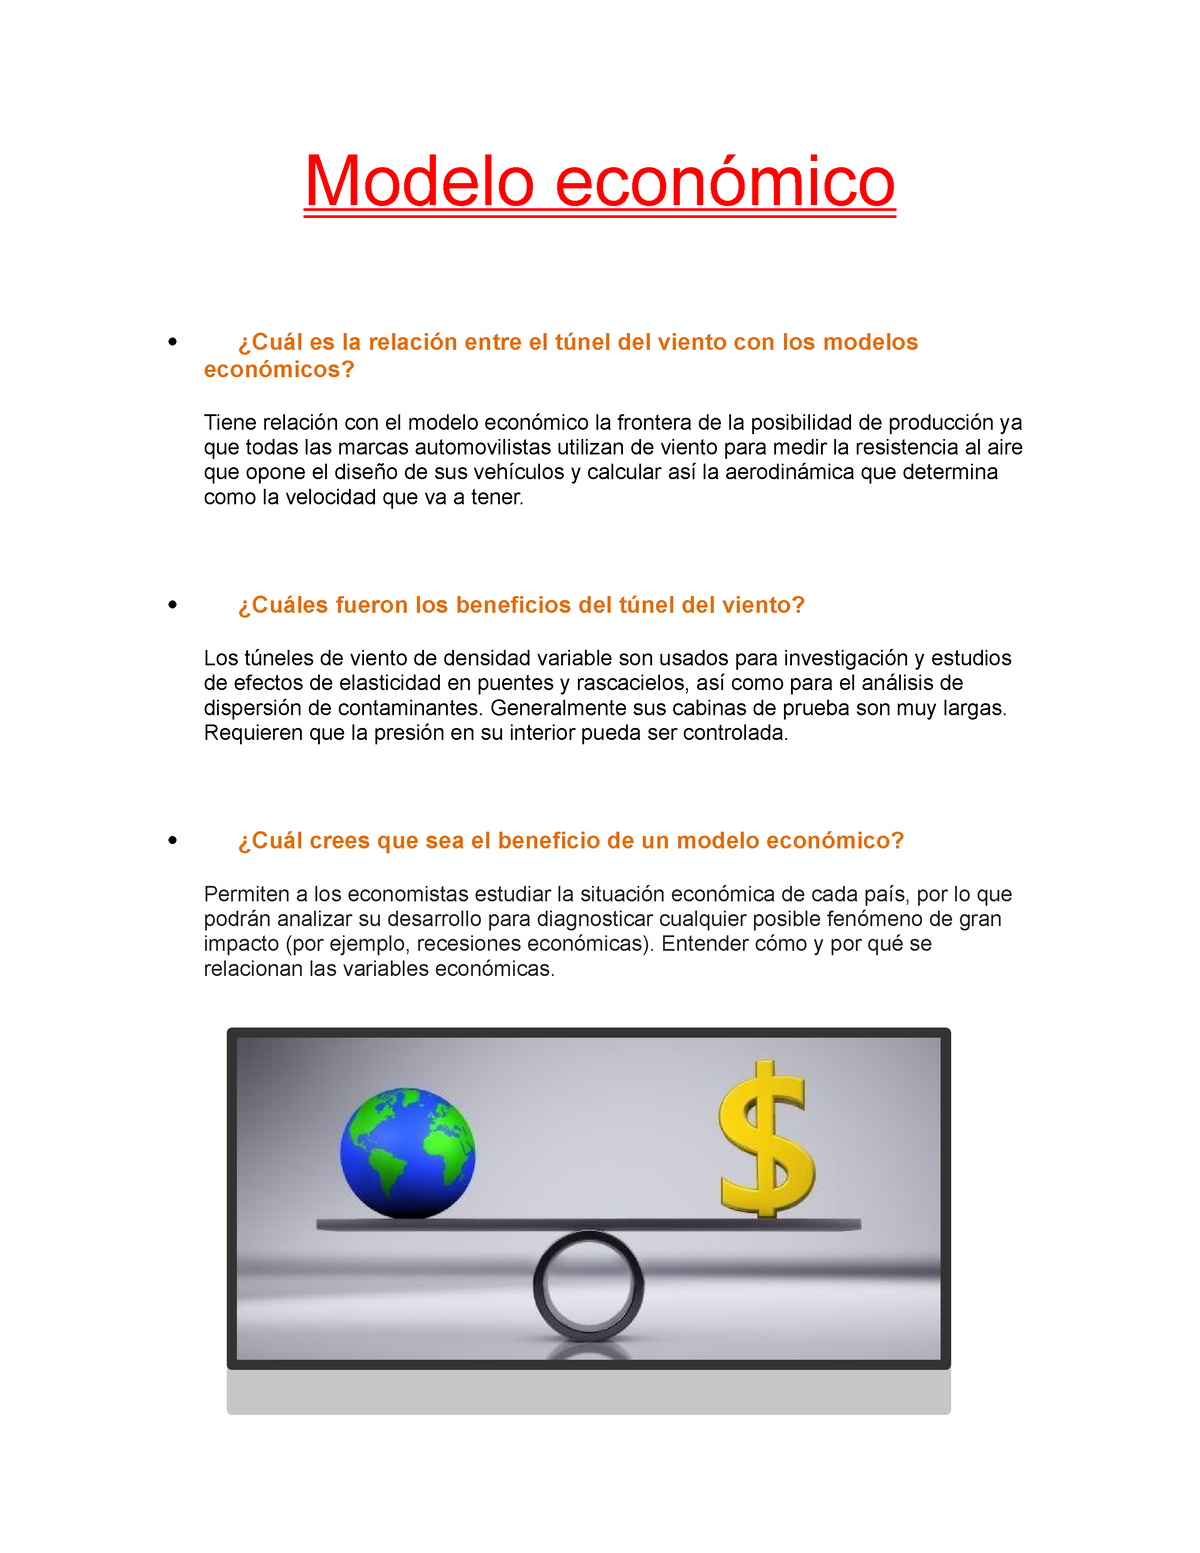 Modelo económico - Muy bien redactado y especifico - Modelo económico   ¿Cuál es la relación entre - Studocu